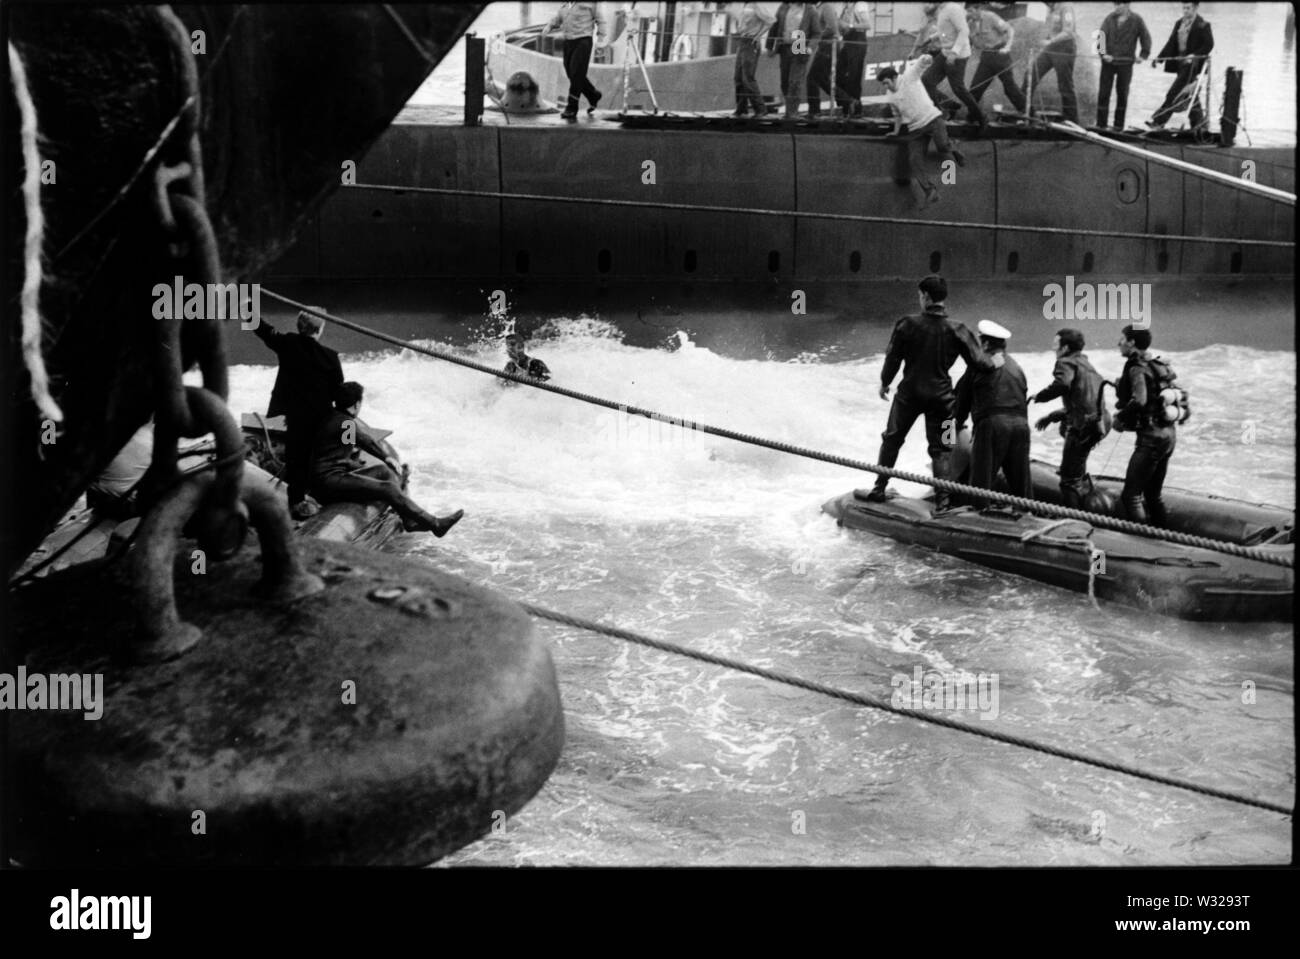 AJAXNETPHOTO. - 03 luglio, 1971. GOSPORT, Inghilterra. - Salvato! - Uno dei tre membri di equipaggio intrappolati nel sottomarino HMS ARTEMIS quando è affondato a fianco della banchina HMS DOLPHIN 2ND LUGLIO,1972, Razzi per la superficie in un esplosione di schiuma. Tutti e tre gli equipaggi sono state correttamente salvato dalla nave affondata. Foto:JONATHAN EASTLAND/AJAX. REF:ARTEMIS 1971 1 Foto Stock